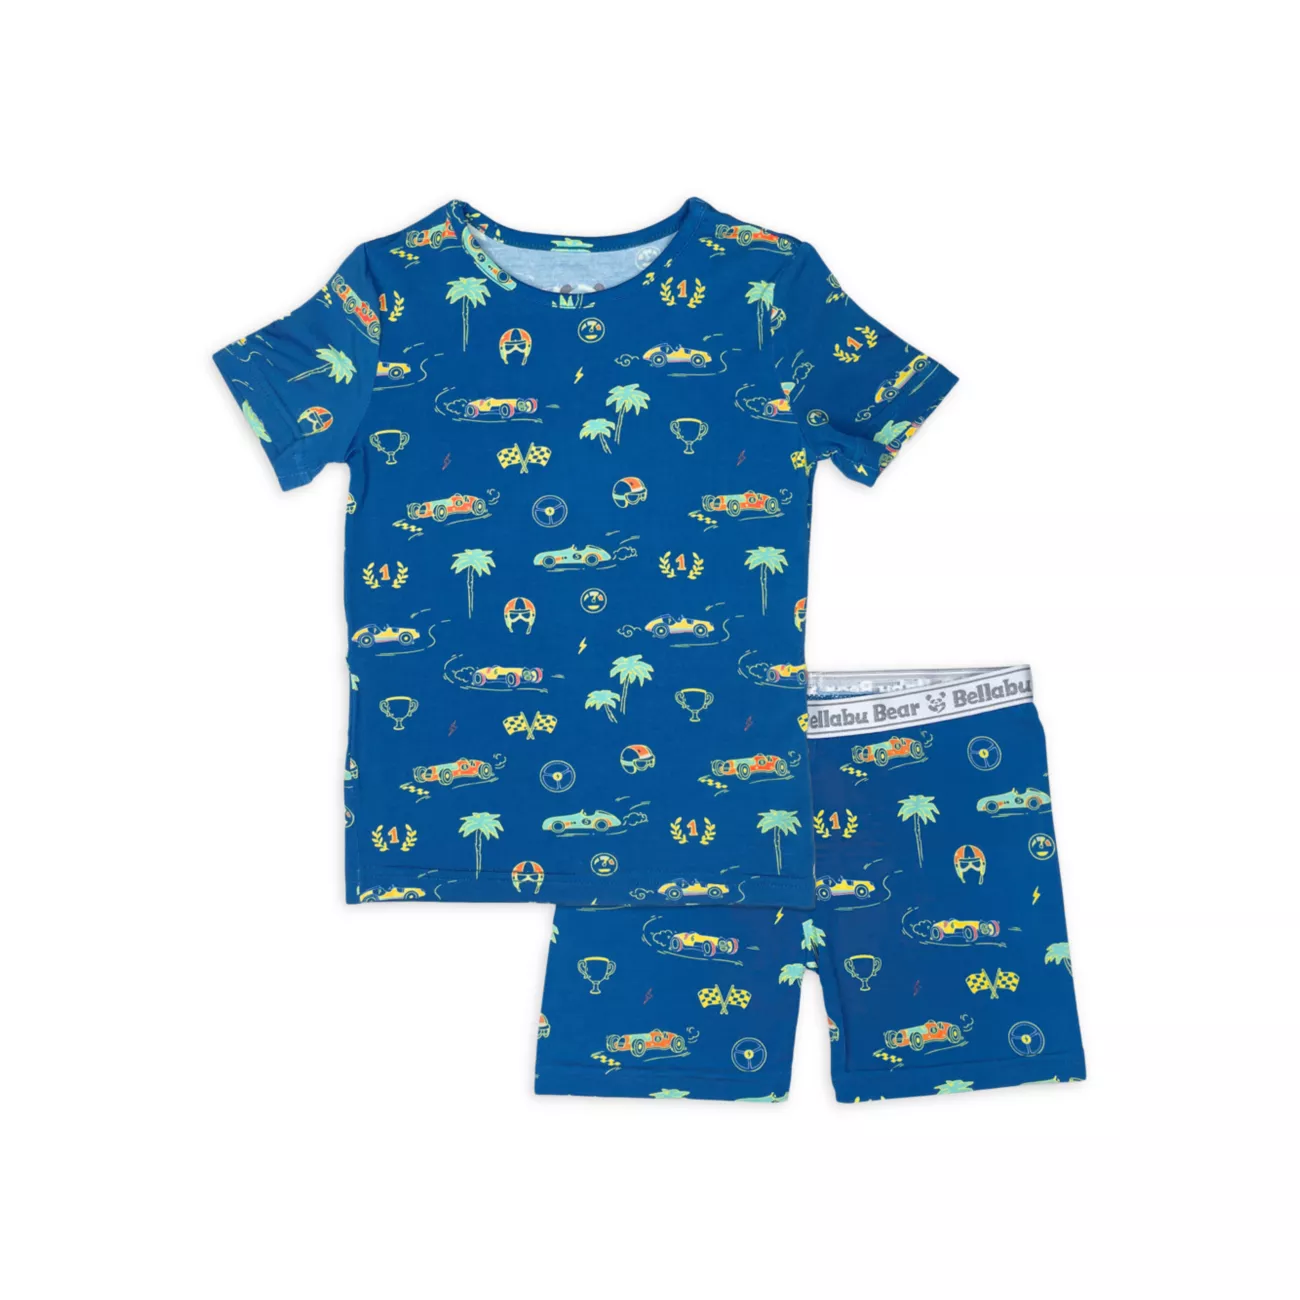 Baby Boy's, Little Boy's &amp; Комплект из двух пижамных шорт с принтом гоночных машин для мальчика Bellabu Bear